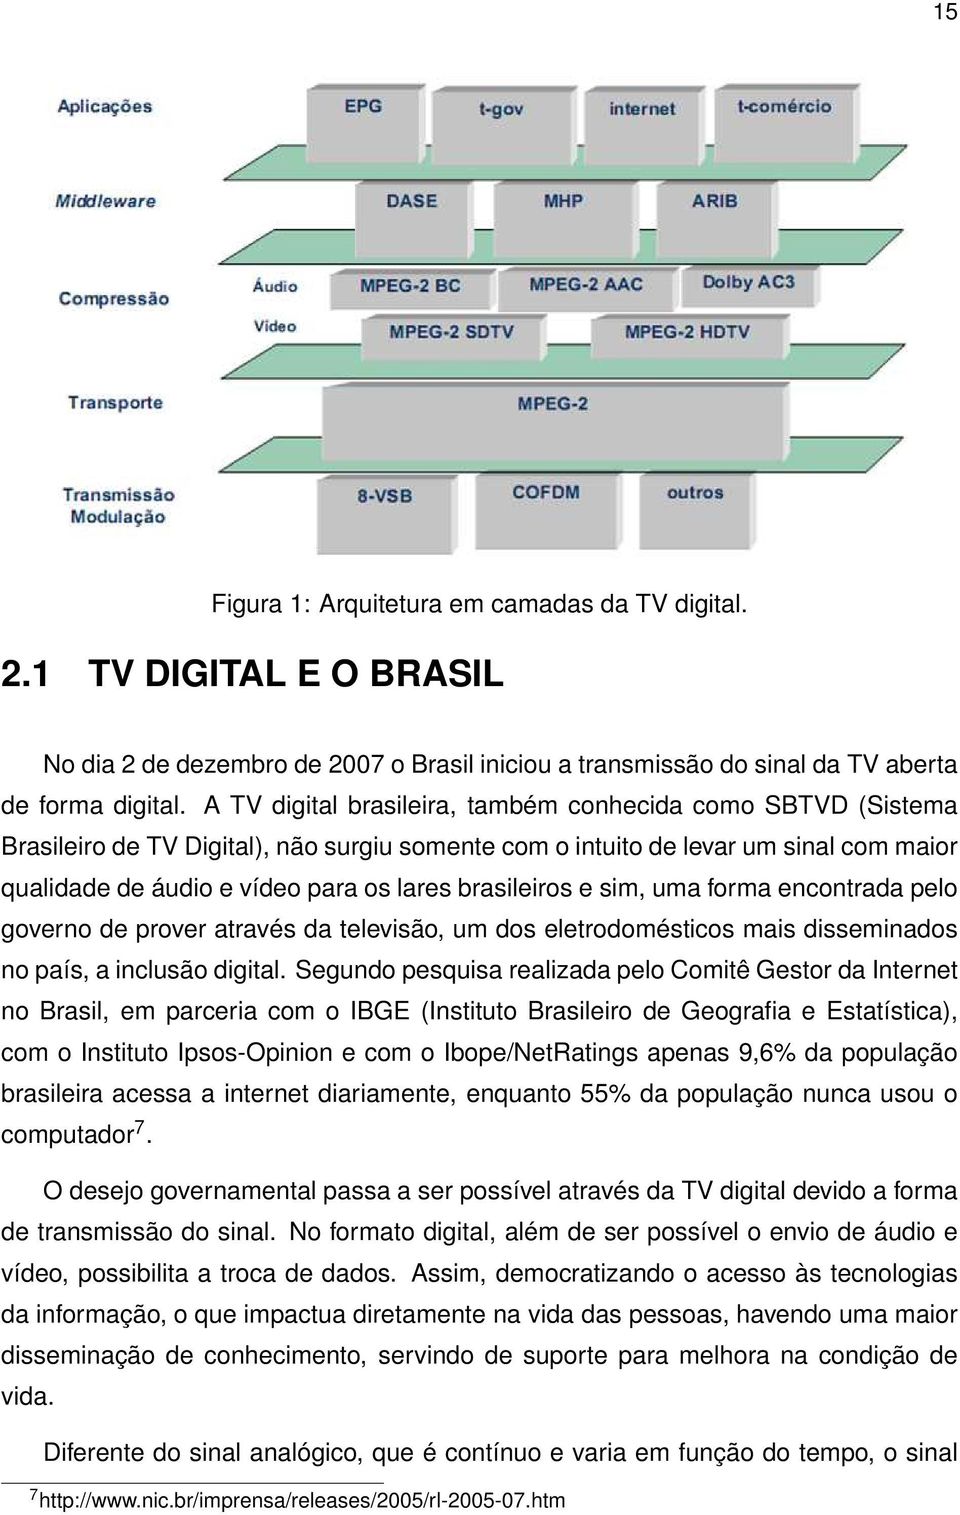 brasileiros e sim, uma forma encontrada pelo governo de prover através da televisão, um dos eletrodomésticos mais disseminados no país, a inclusão digital.